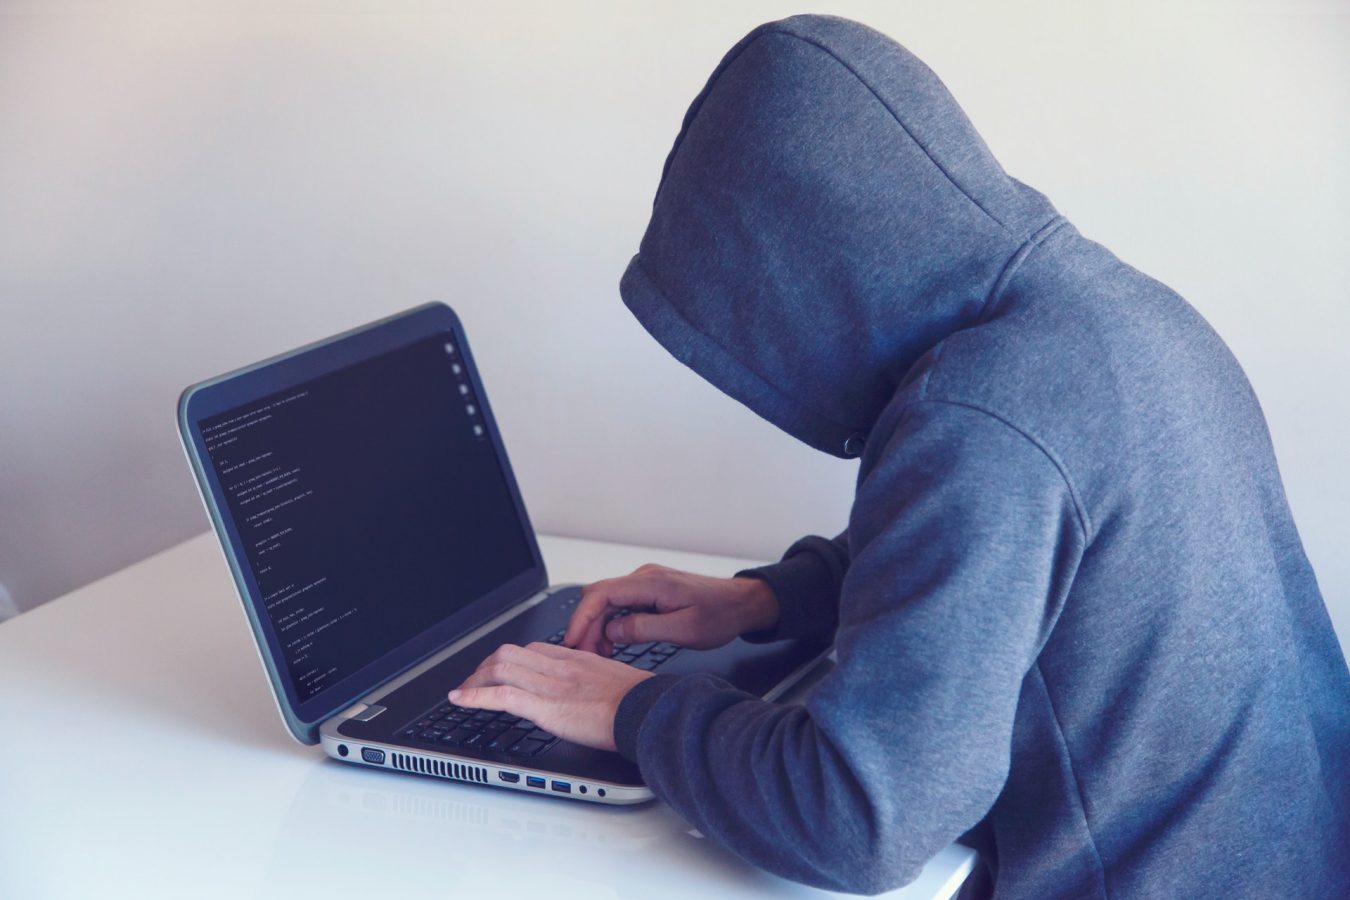 złodziej przestępca haker laptop niebezpieczeństwo